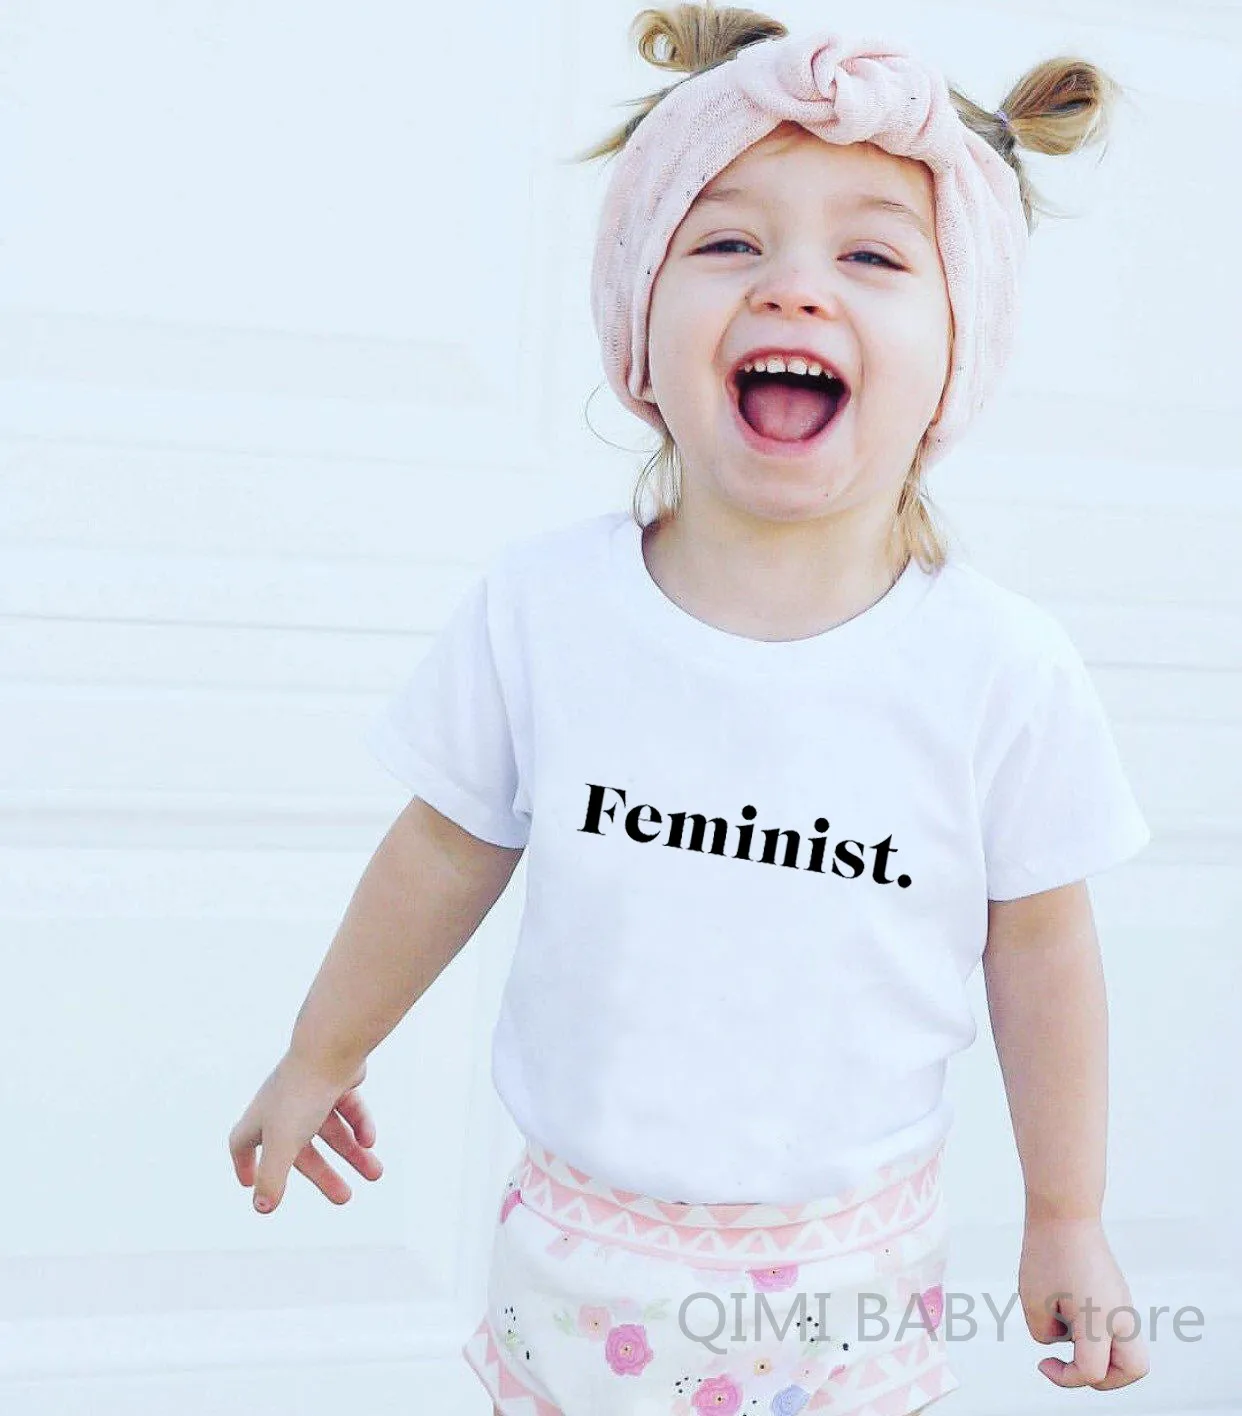 Feminist Toddler Infant Newborn Baby Short Sleeve Tshirt Children White T-shirt Kids Cool Slogan Tops Unisex Girl Boy Tee